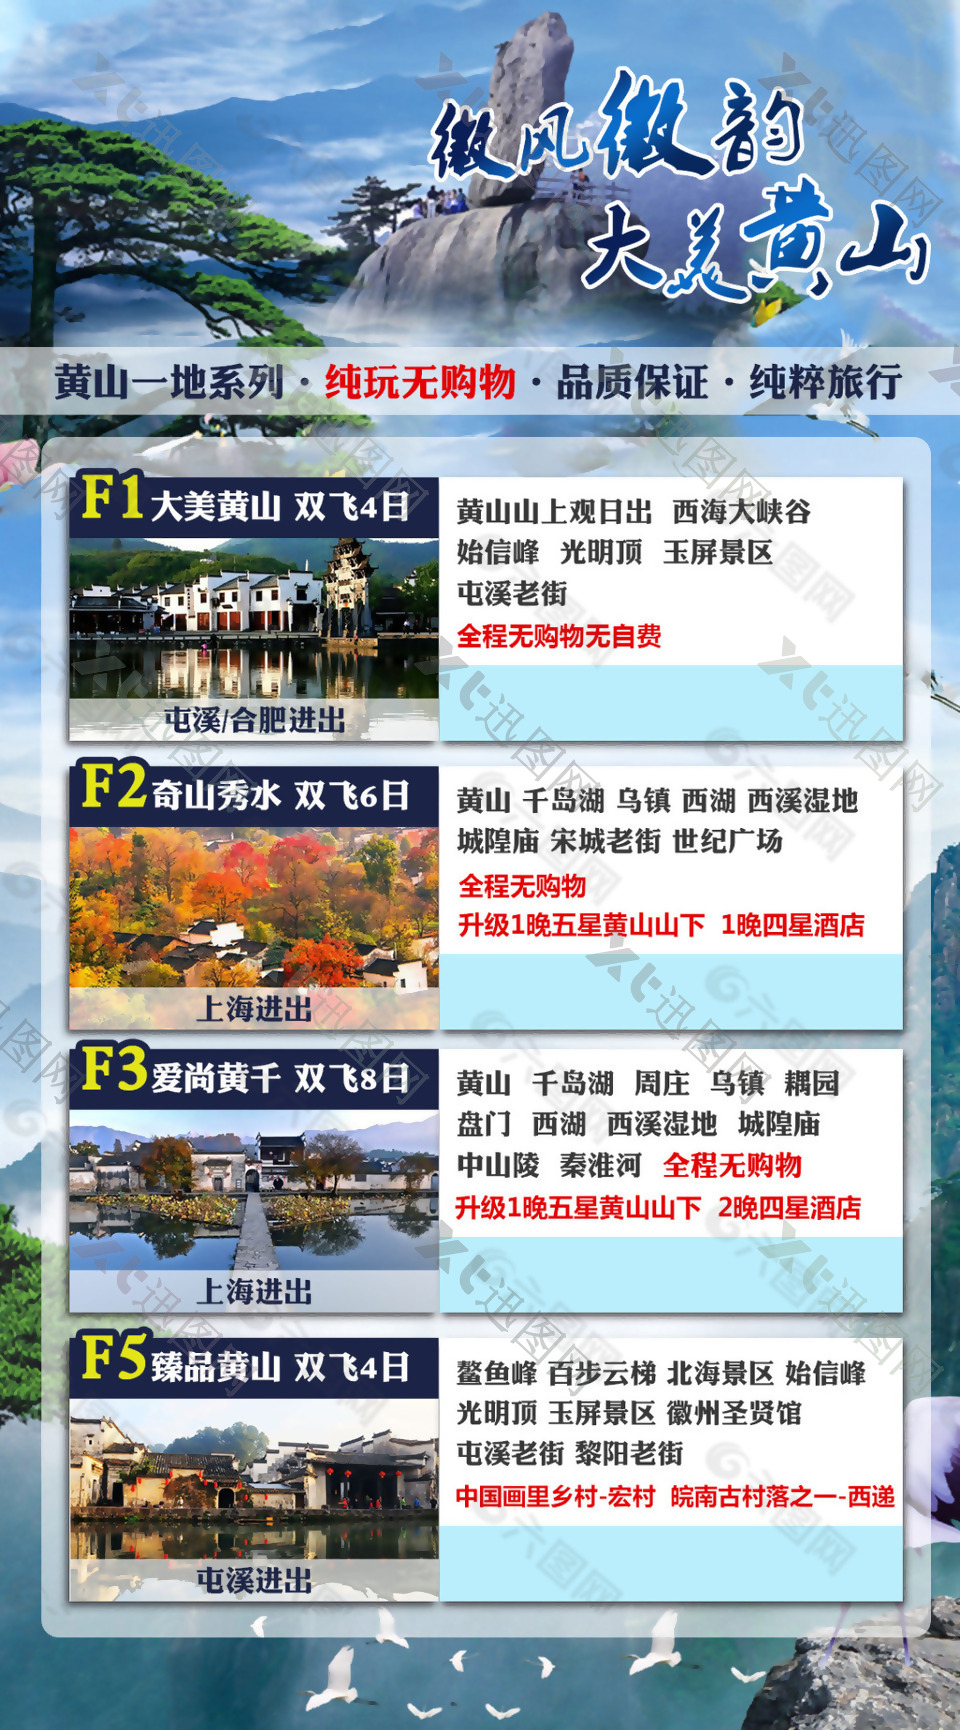 黄山旅游系列广告海报